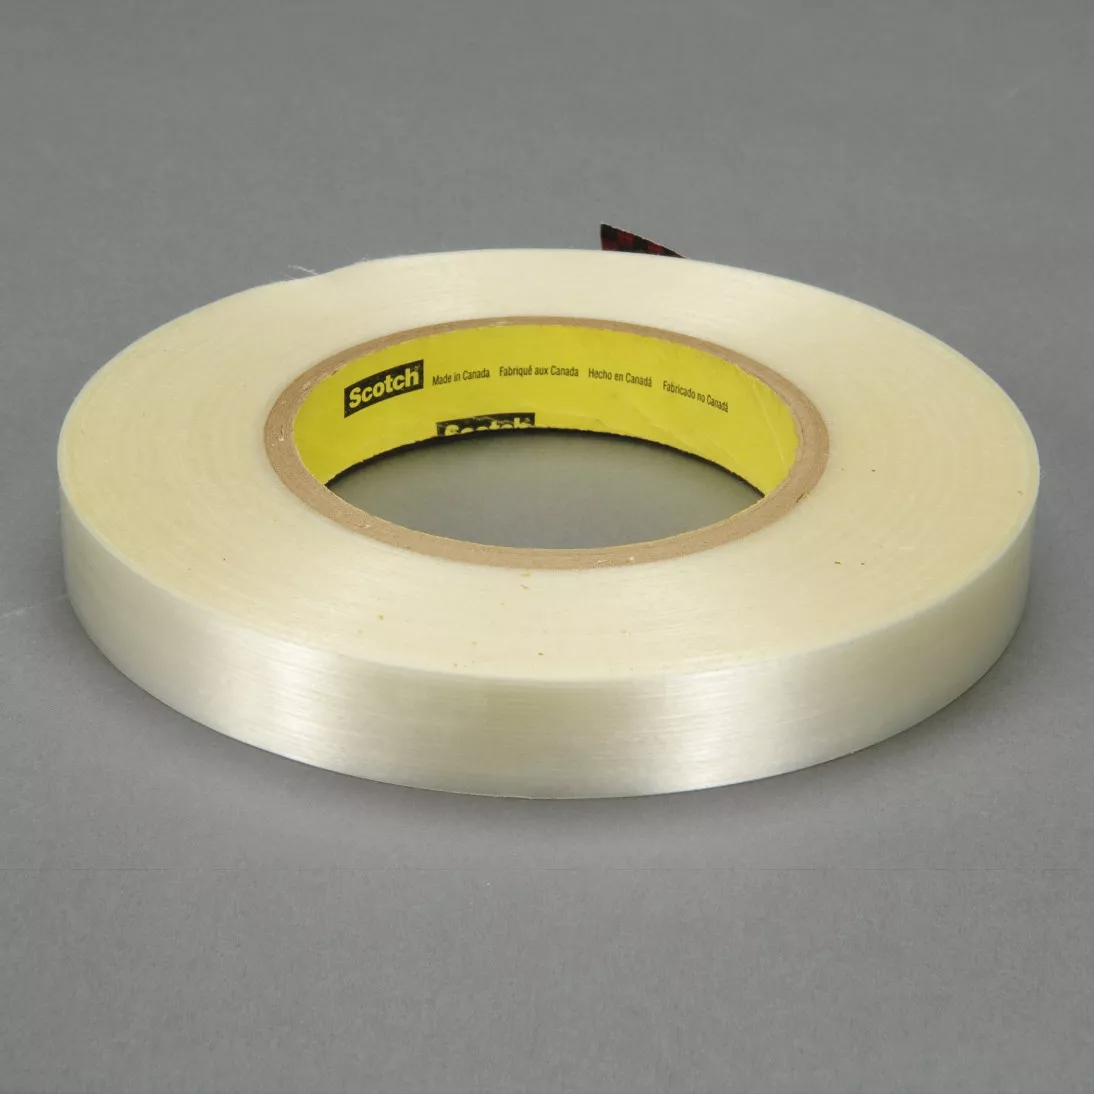 Scotch® Filament Tape 8809, Clear, 24 mm x 660 m, 7.7 mil, 6 rolls per
case, Restricted